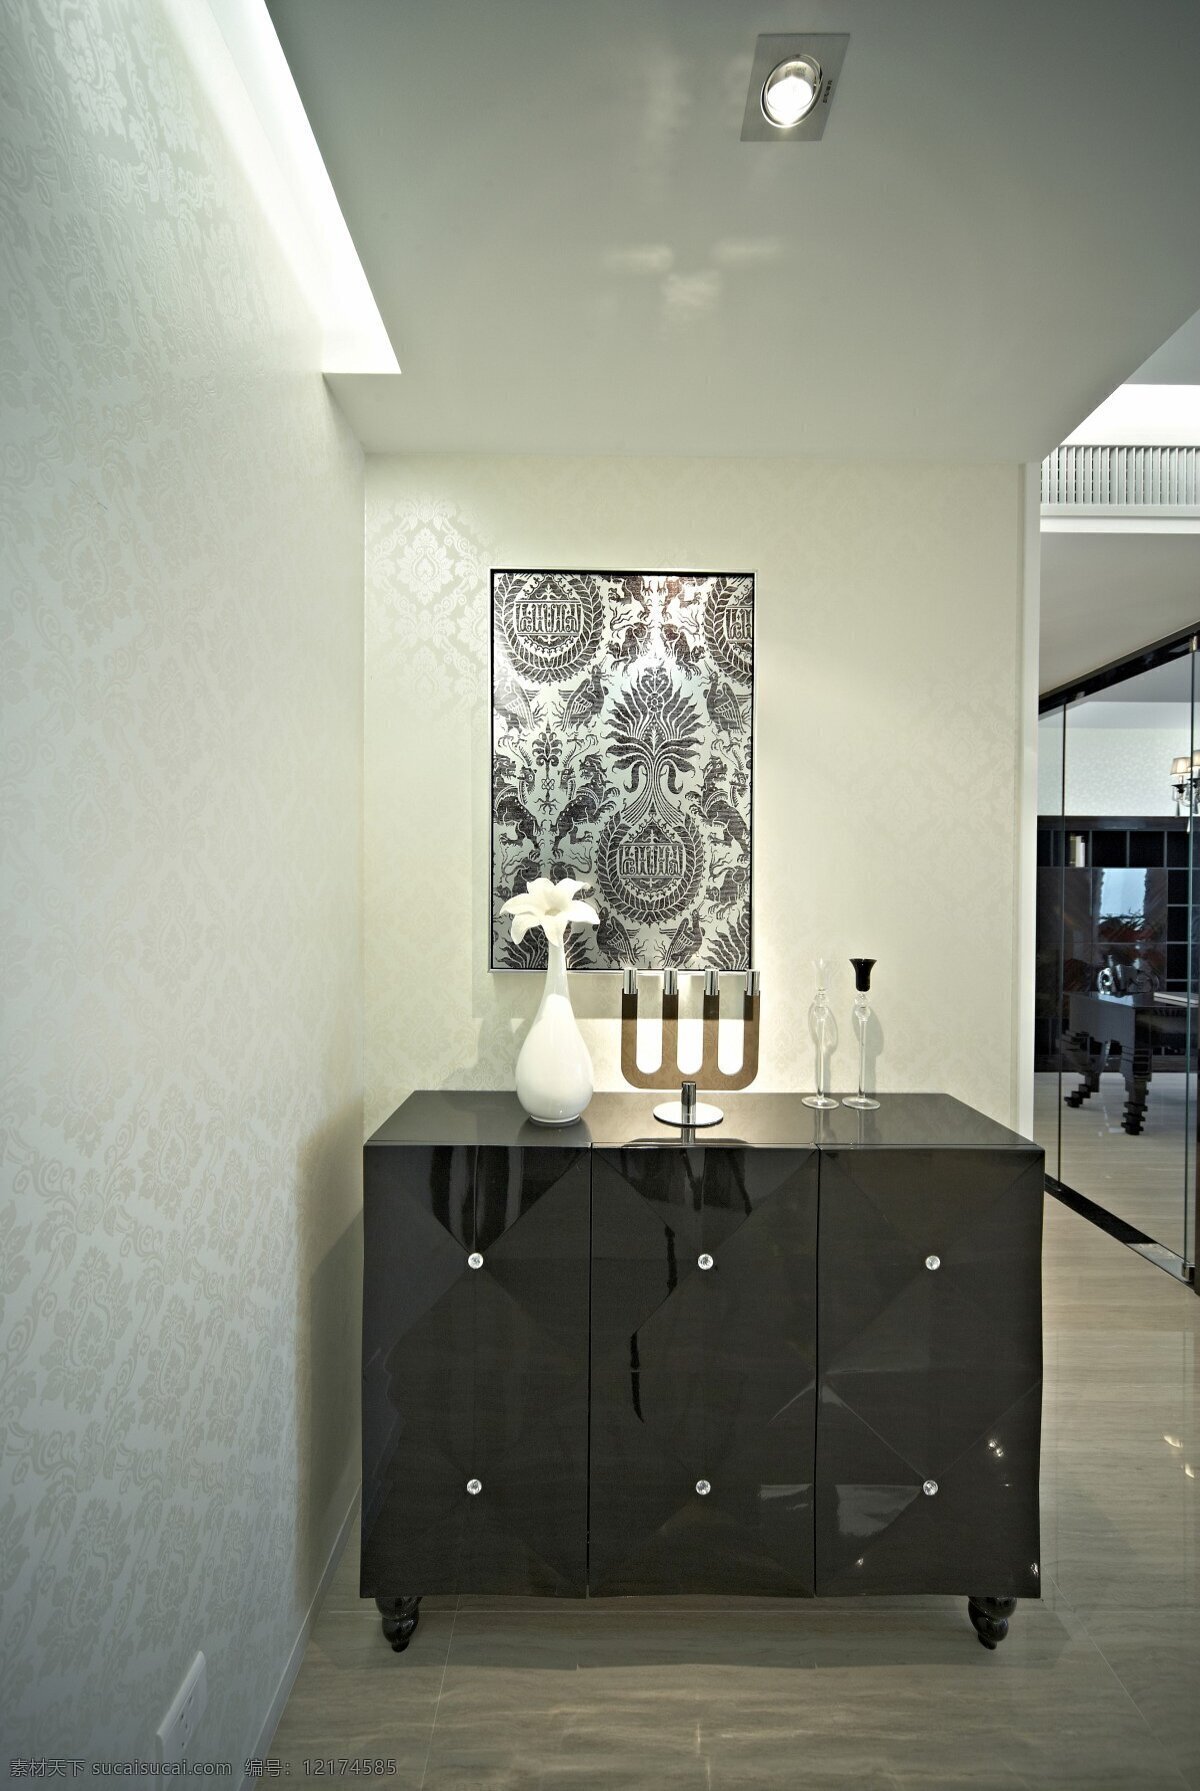 现代 风 客厅 黑色 镜面 柜子 室内装修 效果图 客厅装修 灰色画作 白色花瓶 木地板